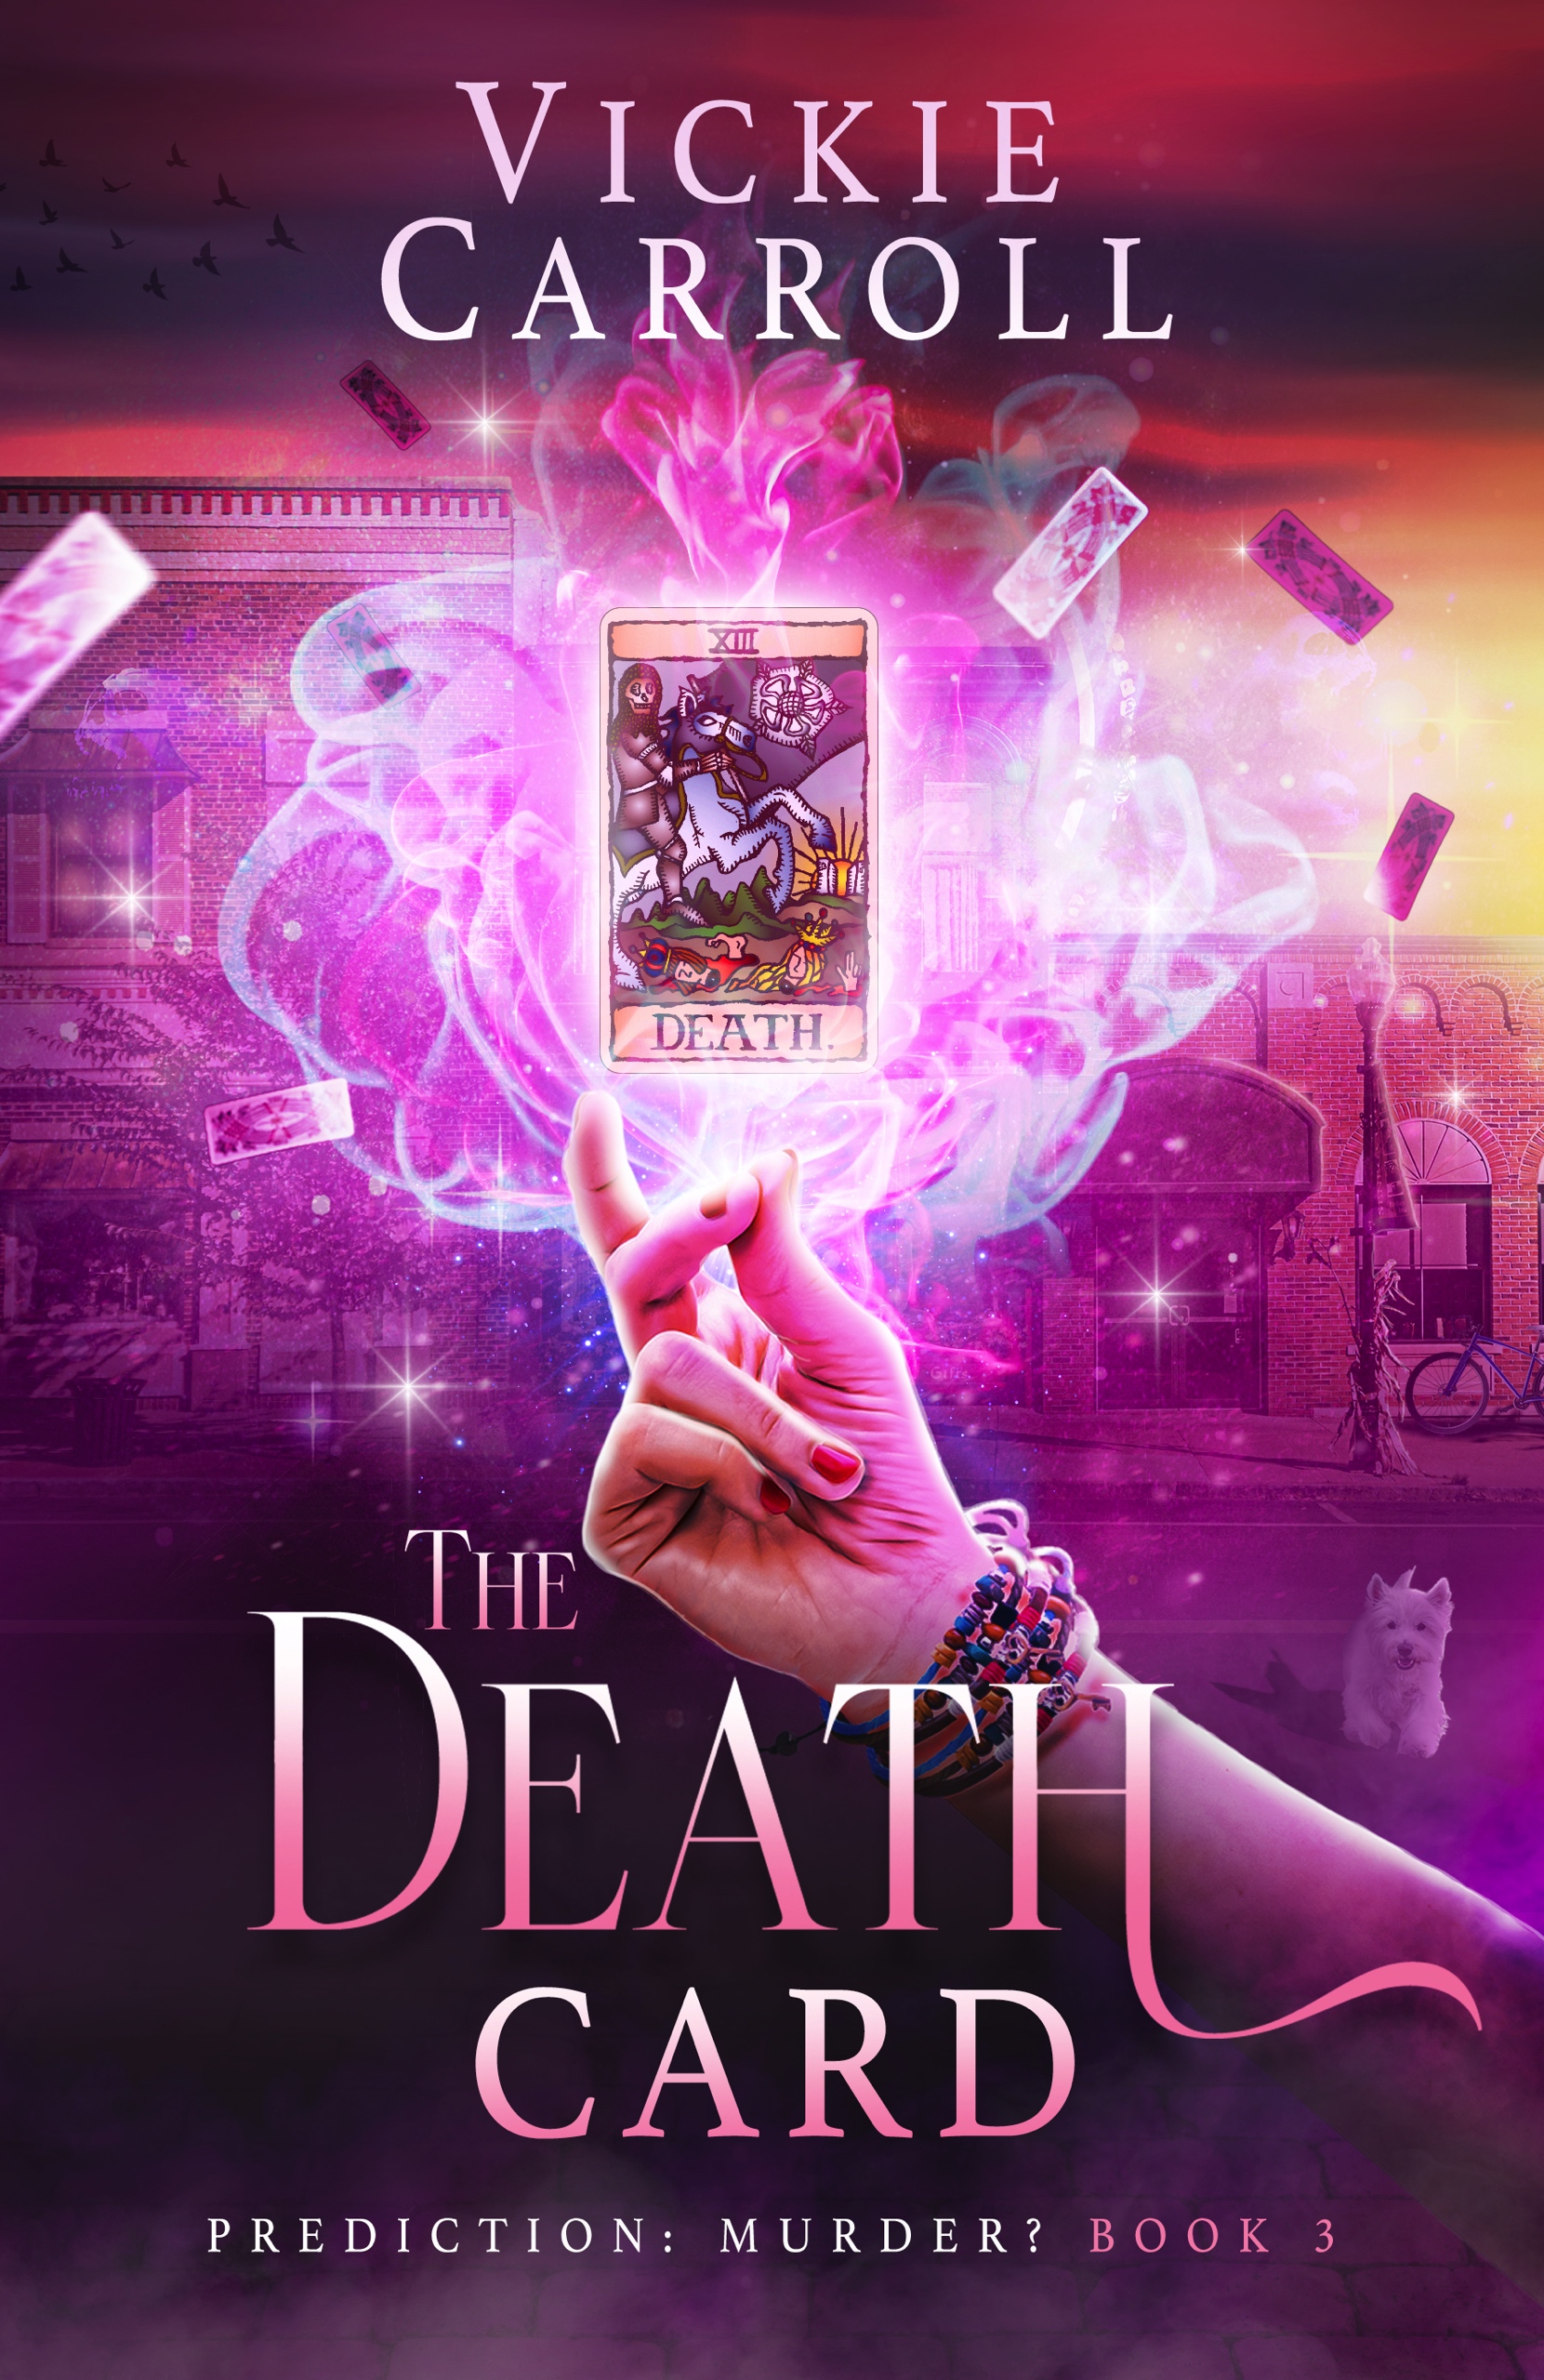 The Death Card